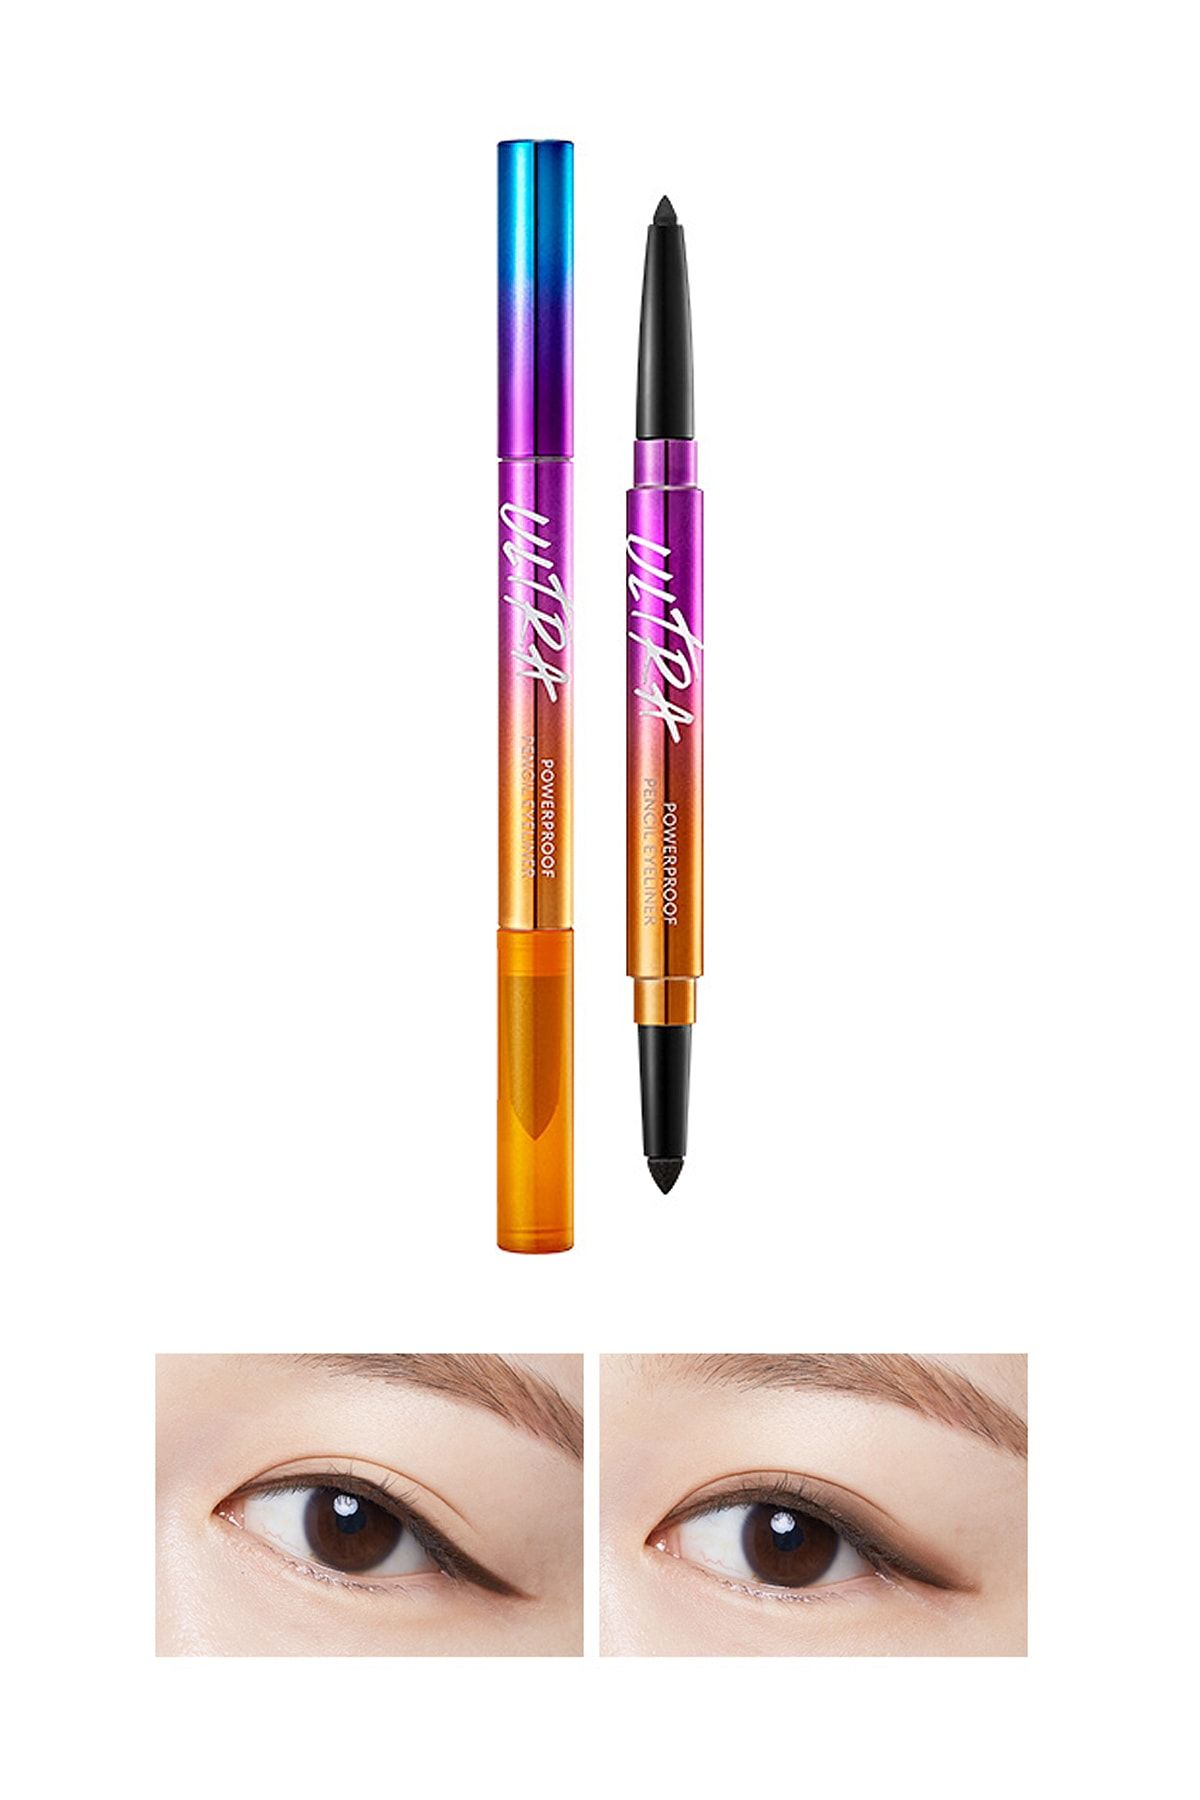 Missha Suya Dayanıklı Kalıcı Jel Göz Kalemi Ultra Powerproof Pencil Eyeliner [Brown]